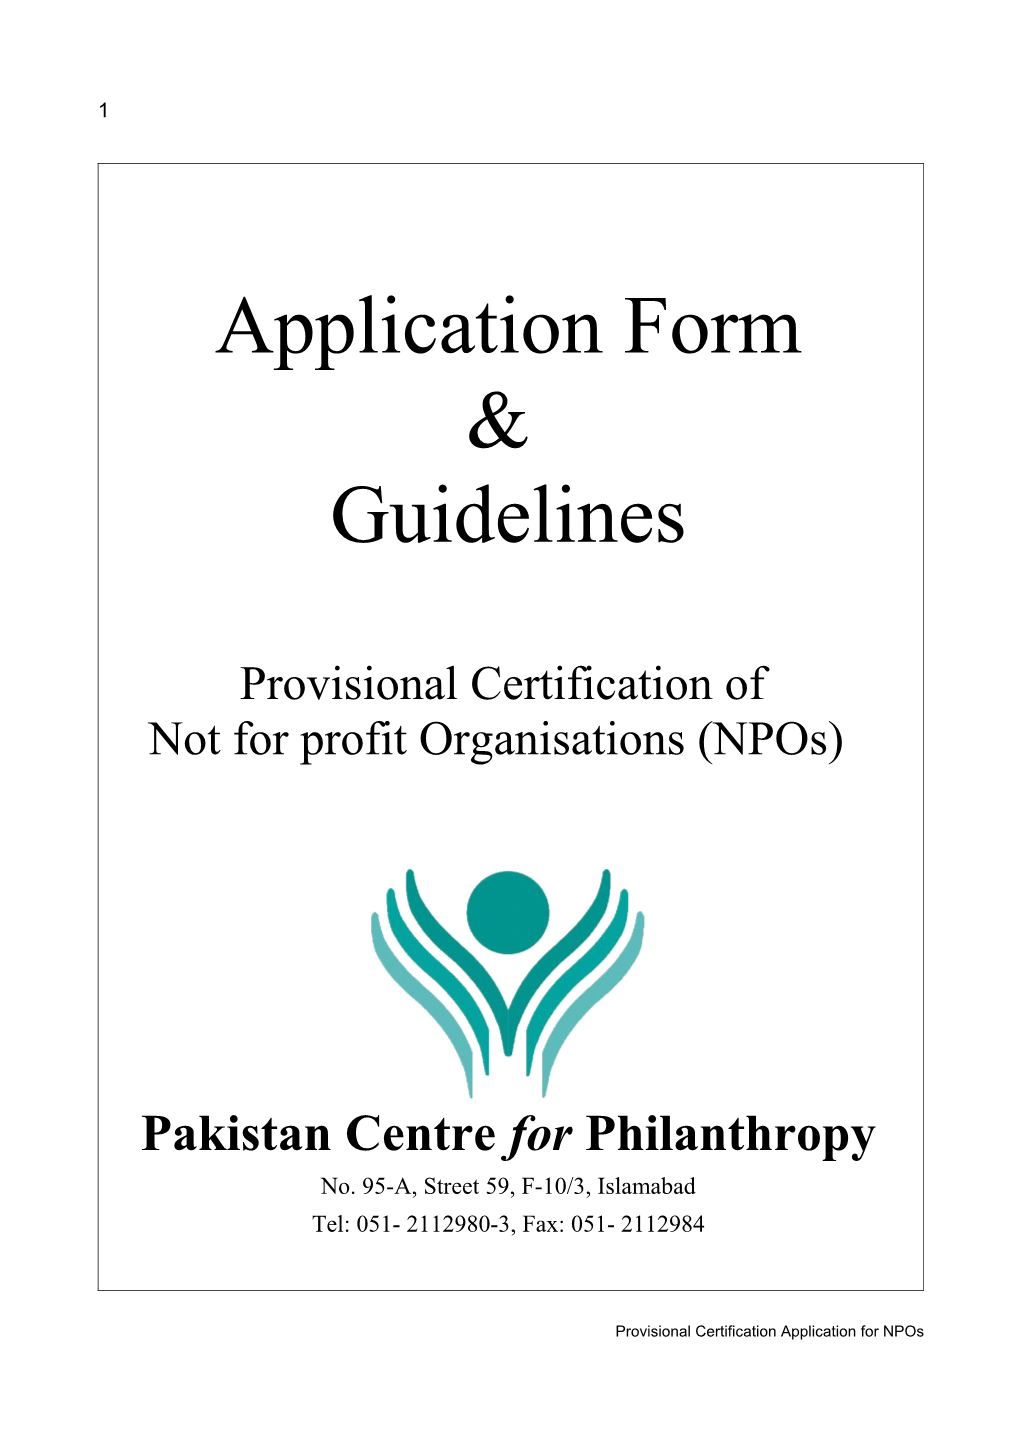 Give Foundation Pre-Registration Form